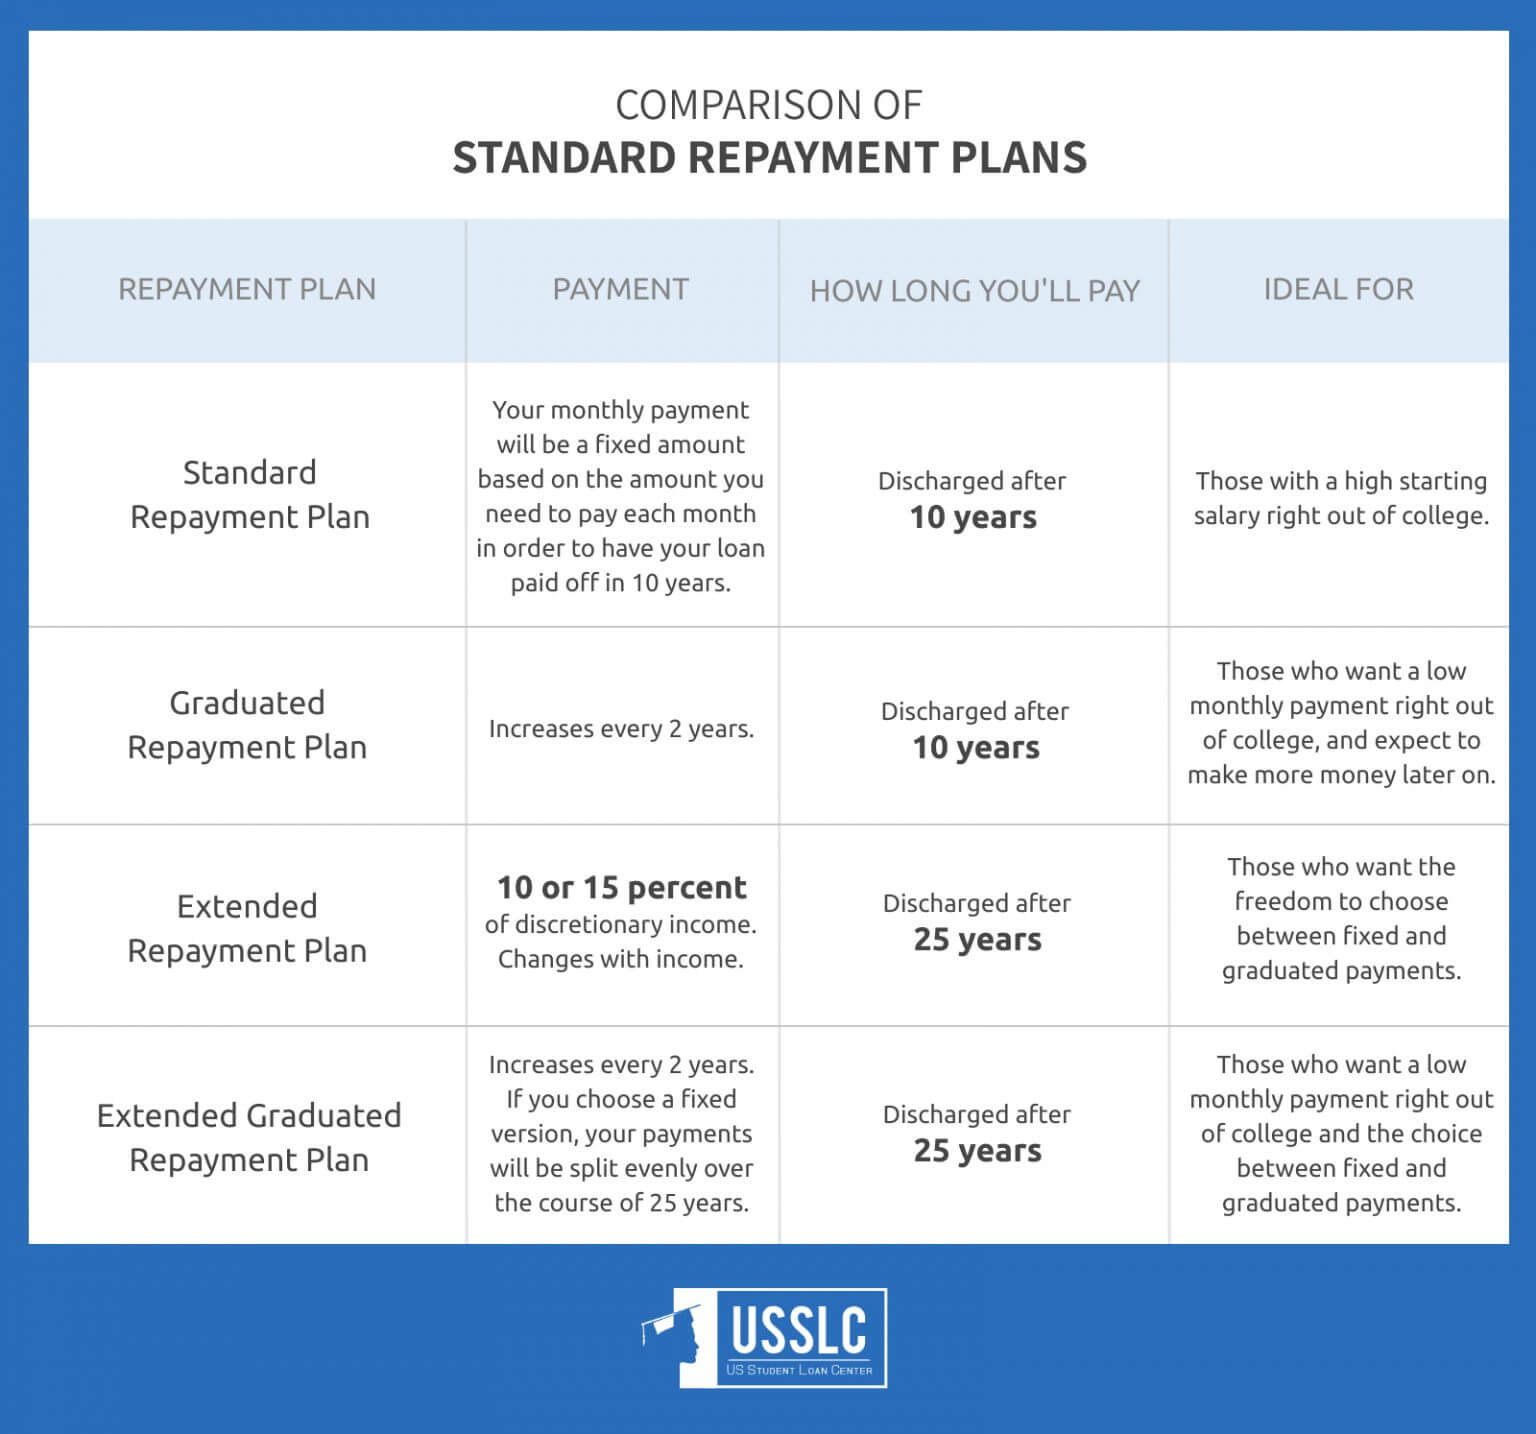 USSLC Standard Repayment Plan Comparison Image 1536x1434 